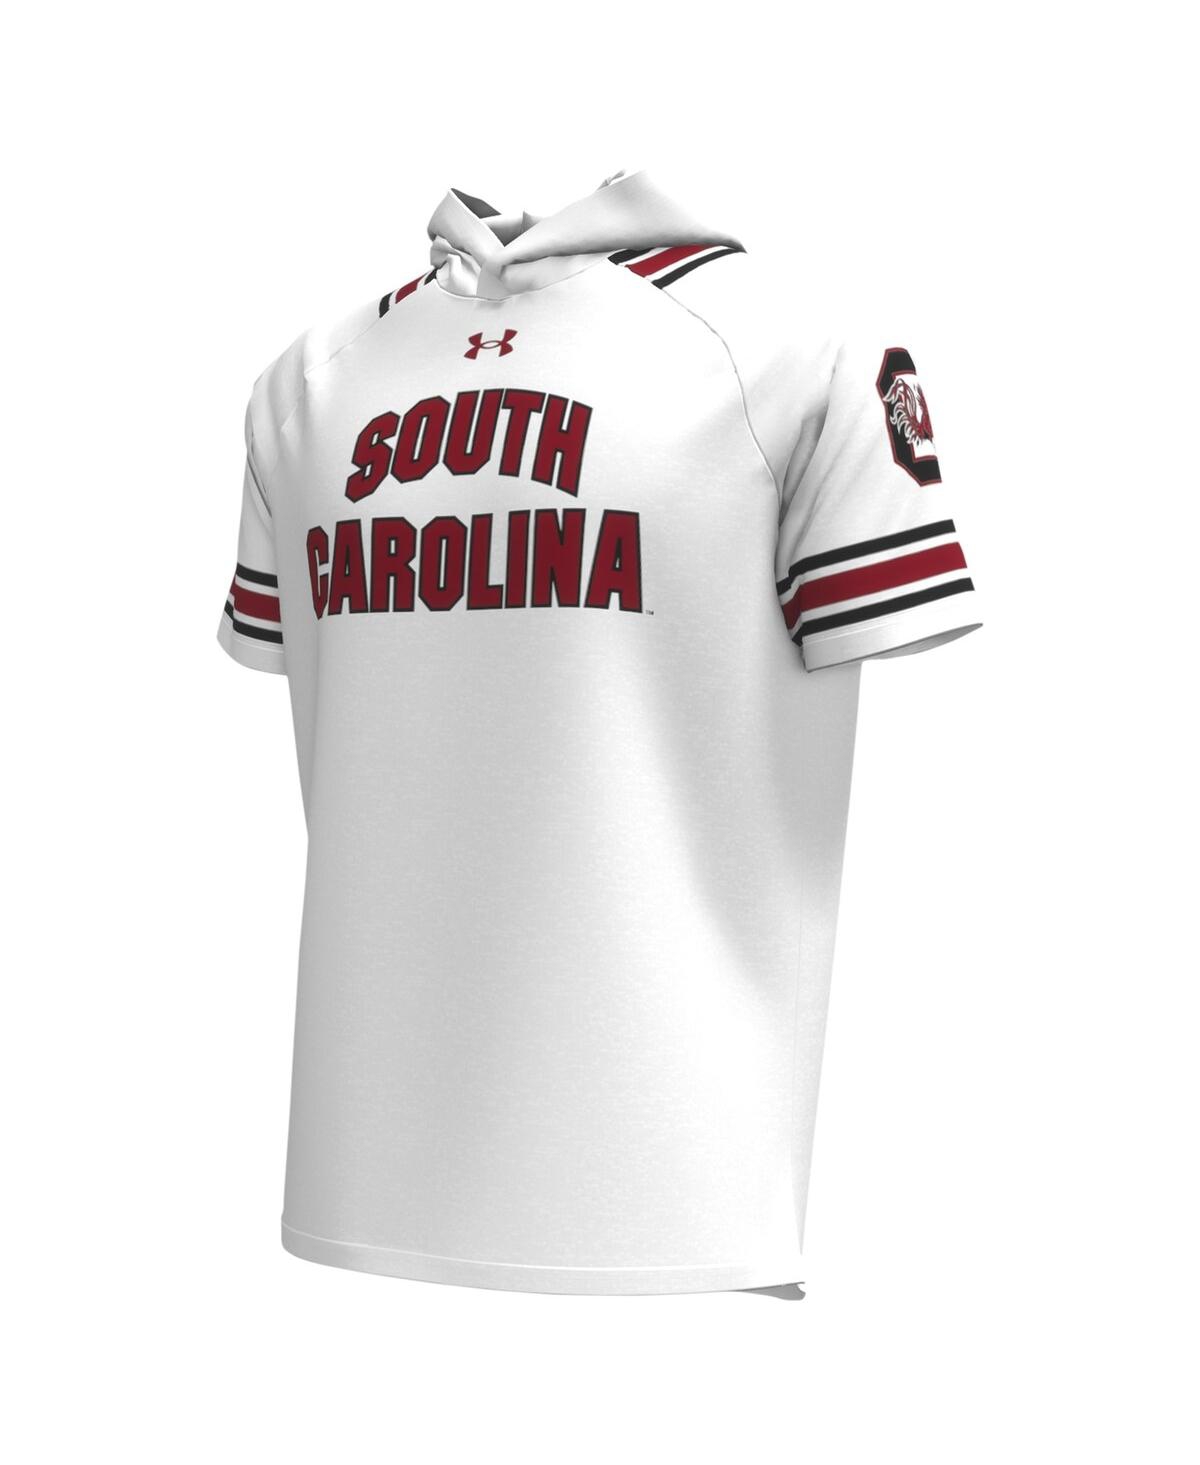 Shop Under Armour Men's  White South Carolina Gamecocks Shooter Raglan Hoodie T-shirt